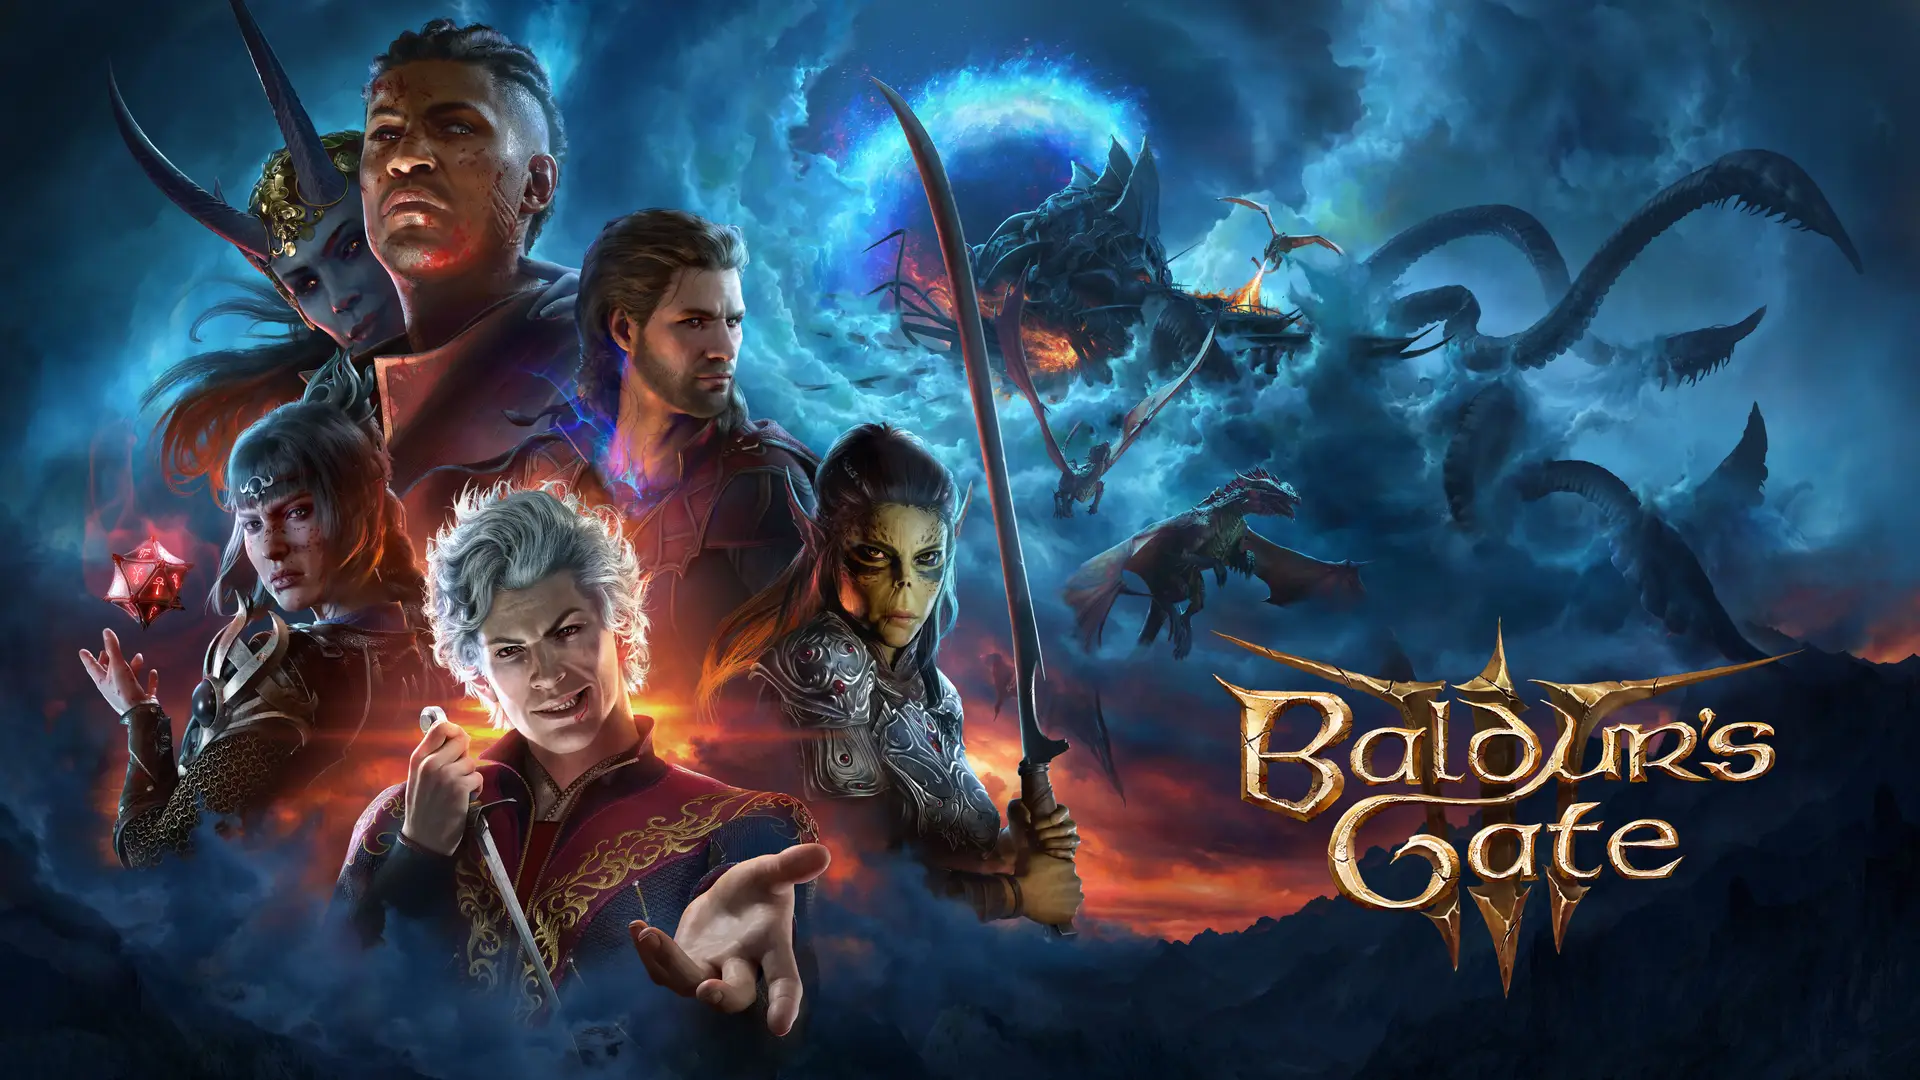 Key Art del juego Baldur's Gate 3 en el que podemos ver a los NPCs Astarion, Lae'zel, Gale, Corazón Sombrio y Wyll junto con el logo